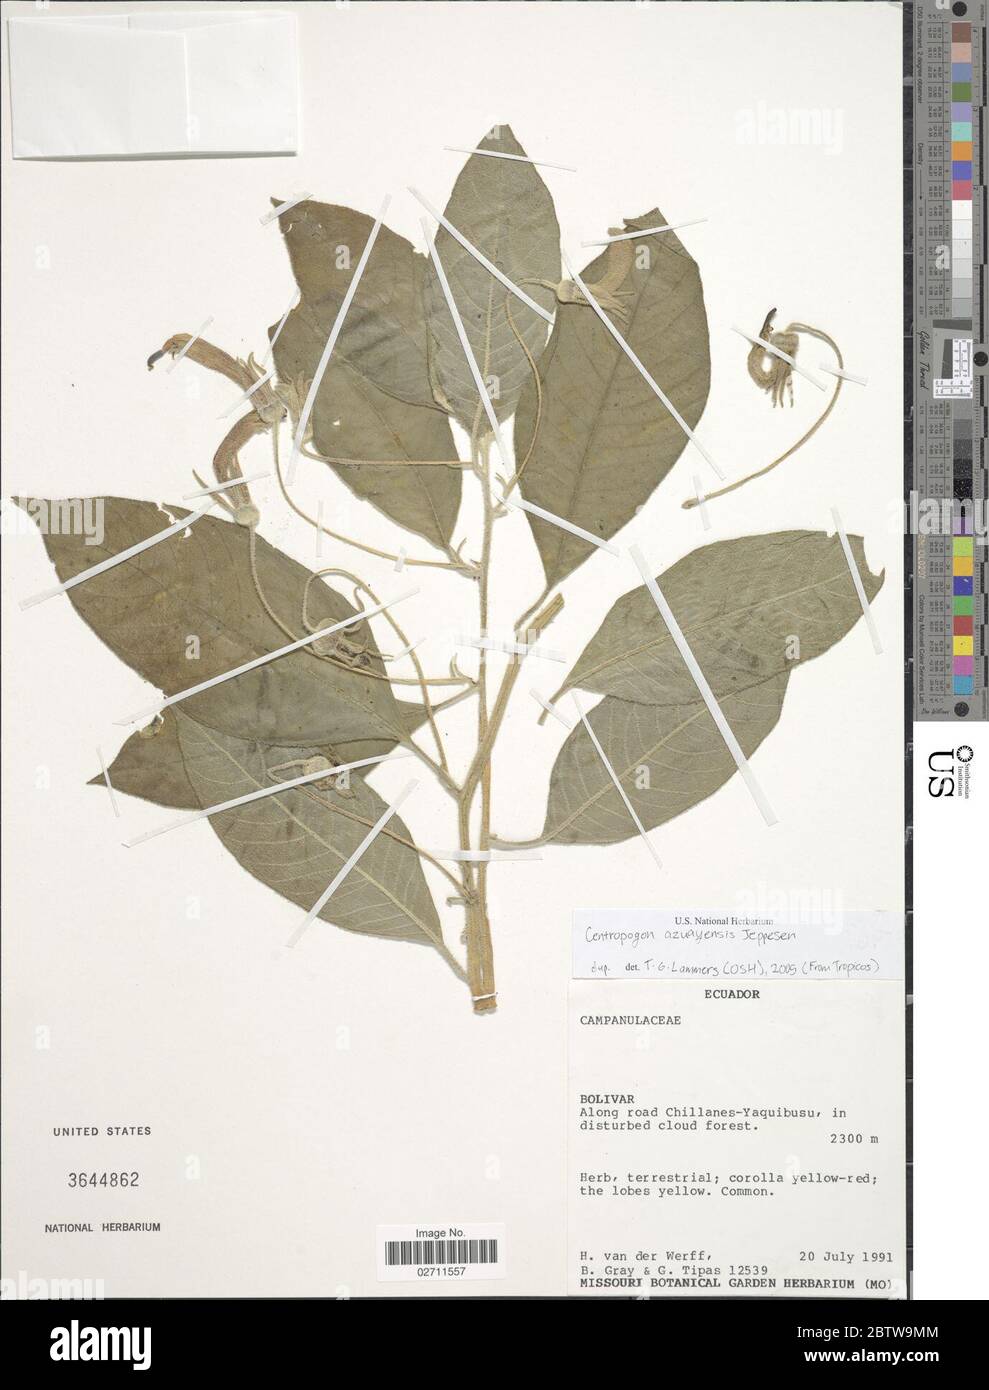 Centropogon azuayensis Jeppesen. Stock Photo